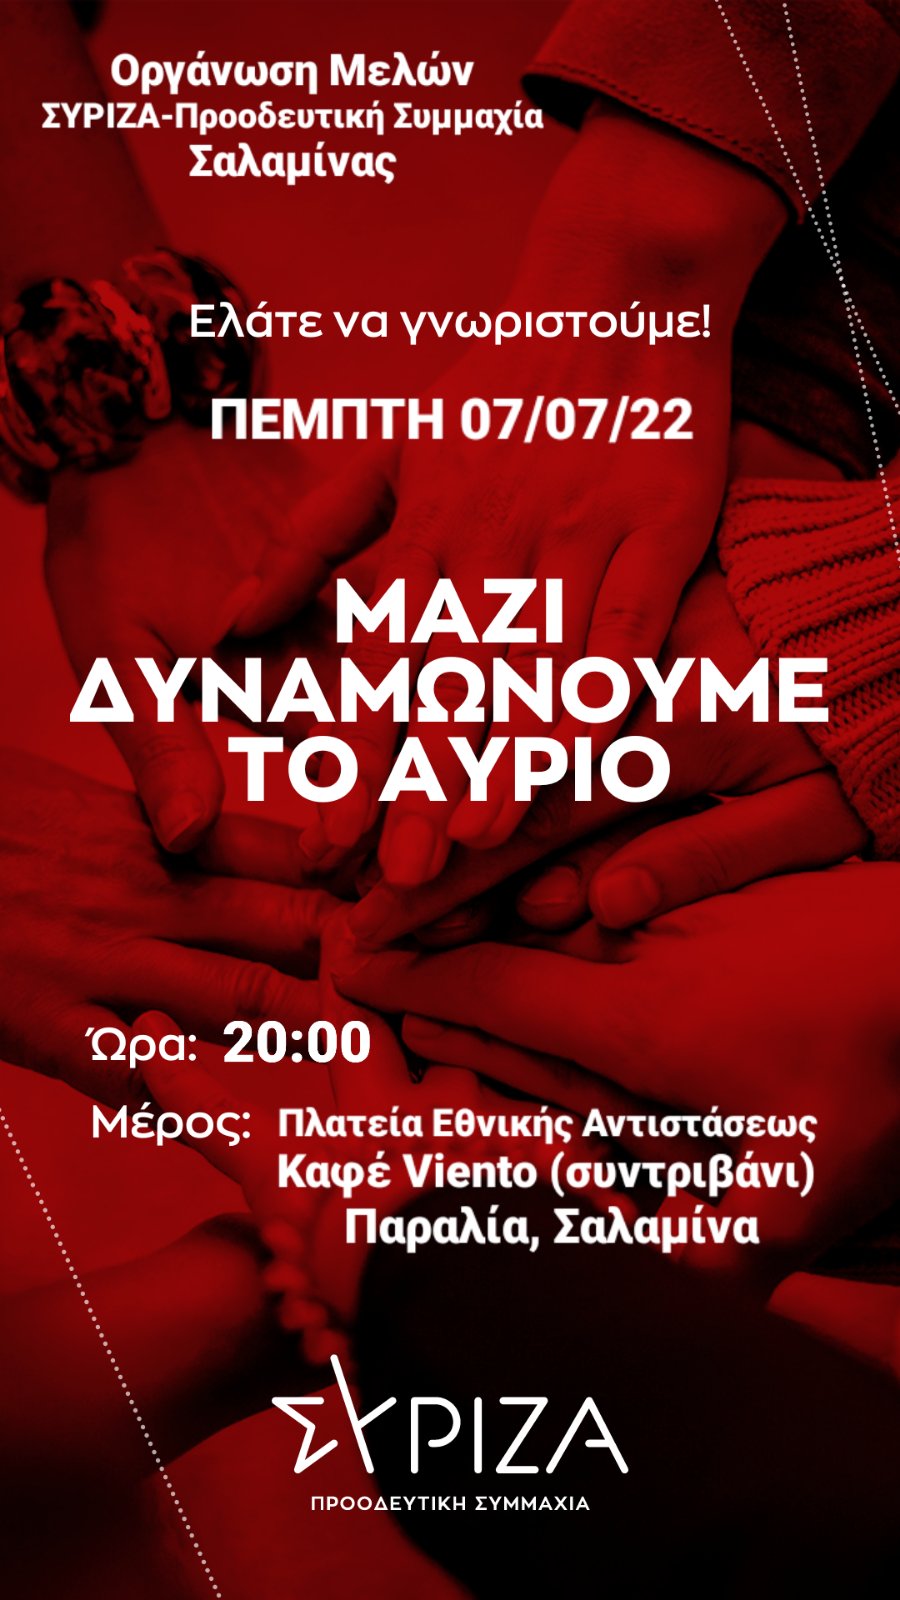 Εκδήλωση υποδοχής νέων μελών ΟΜ ΣΥΡΙΖΑ-Προοδευτική Συμμαχία Σαλαμίνας - ΠΕΜΠΤΗ 07-07-22